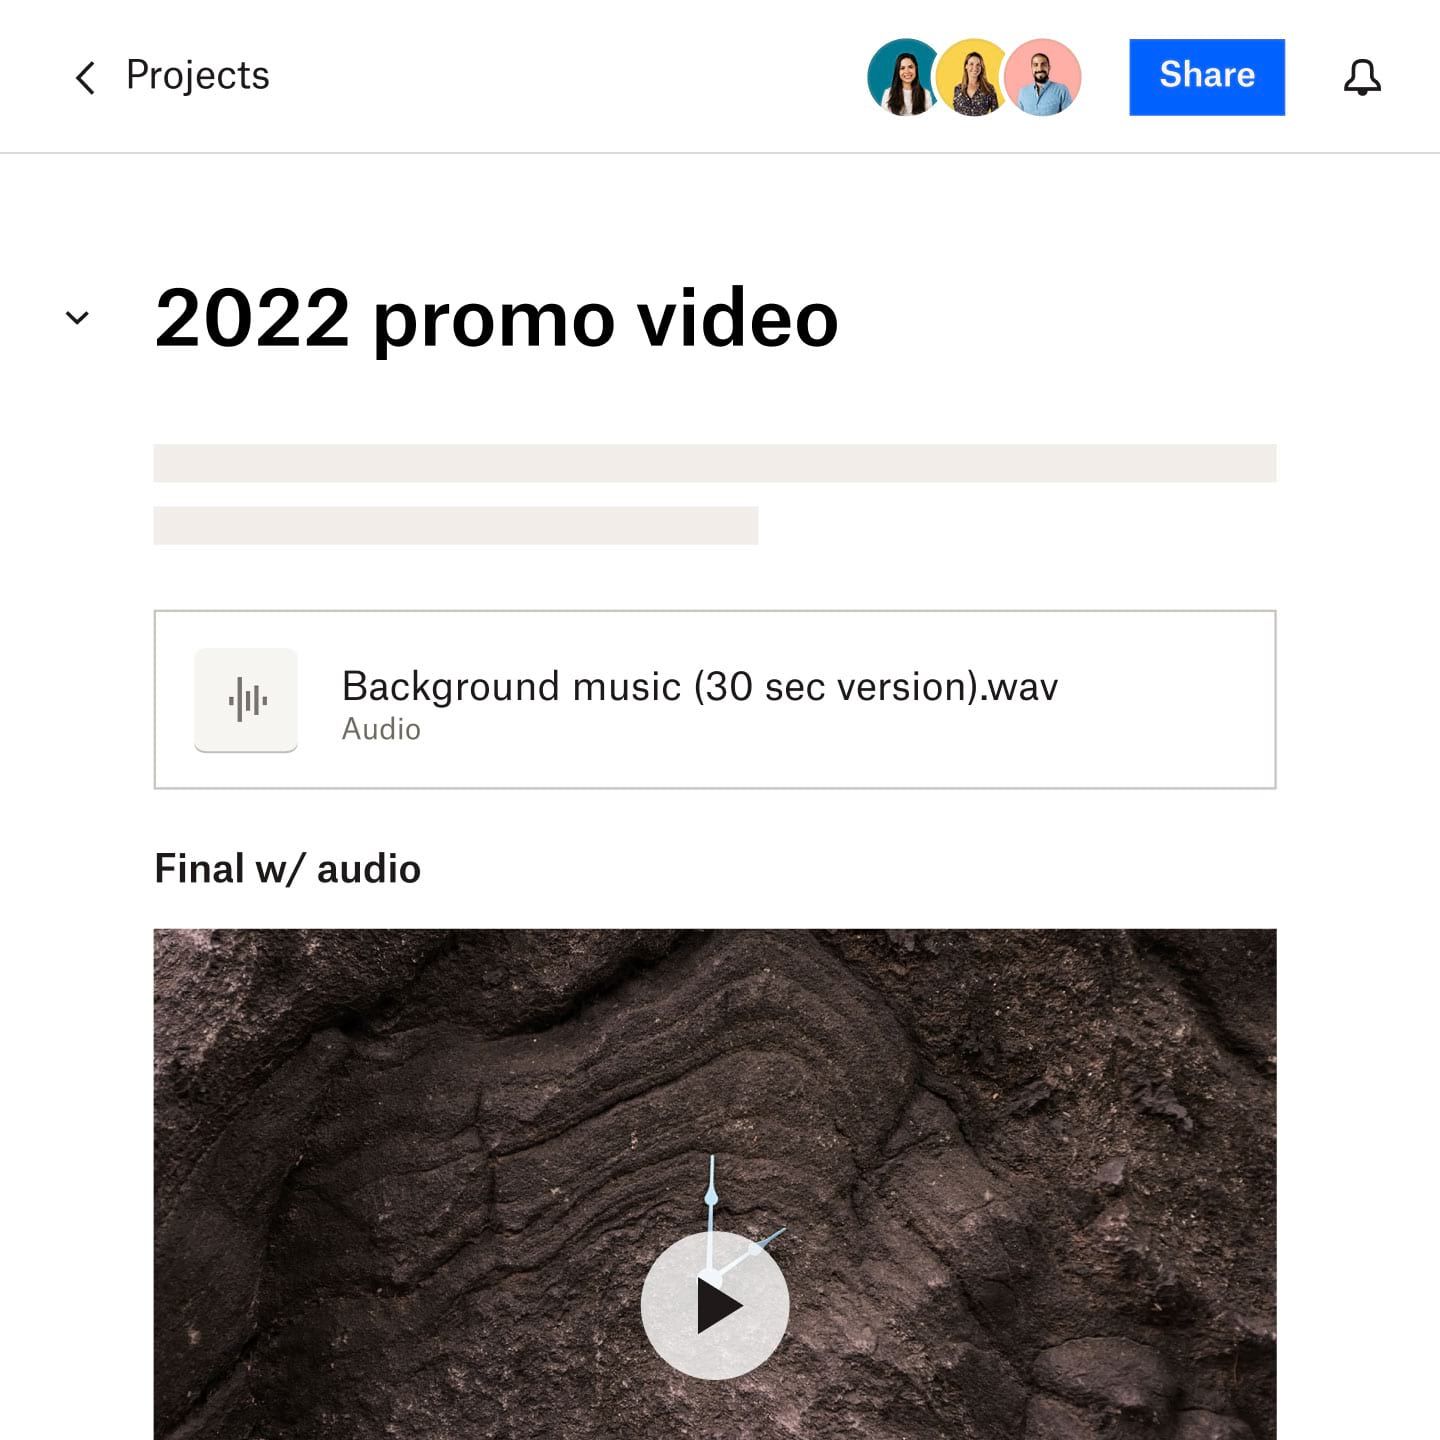 Document Dropbox Paper portant le titre “Vidéo promotionnelle 2022”, montrant un lien vers le fichier audio utilisé dans la vidéo et une capture d'écran partielle de la vidéo terminée